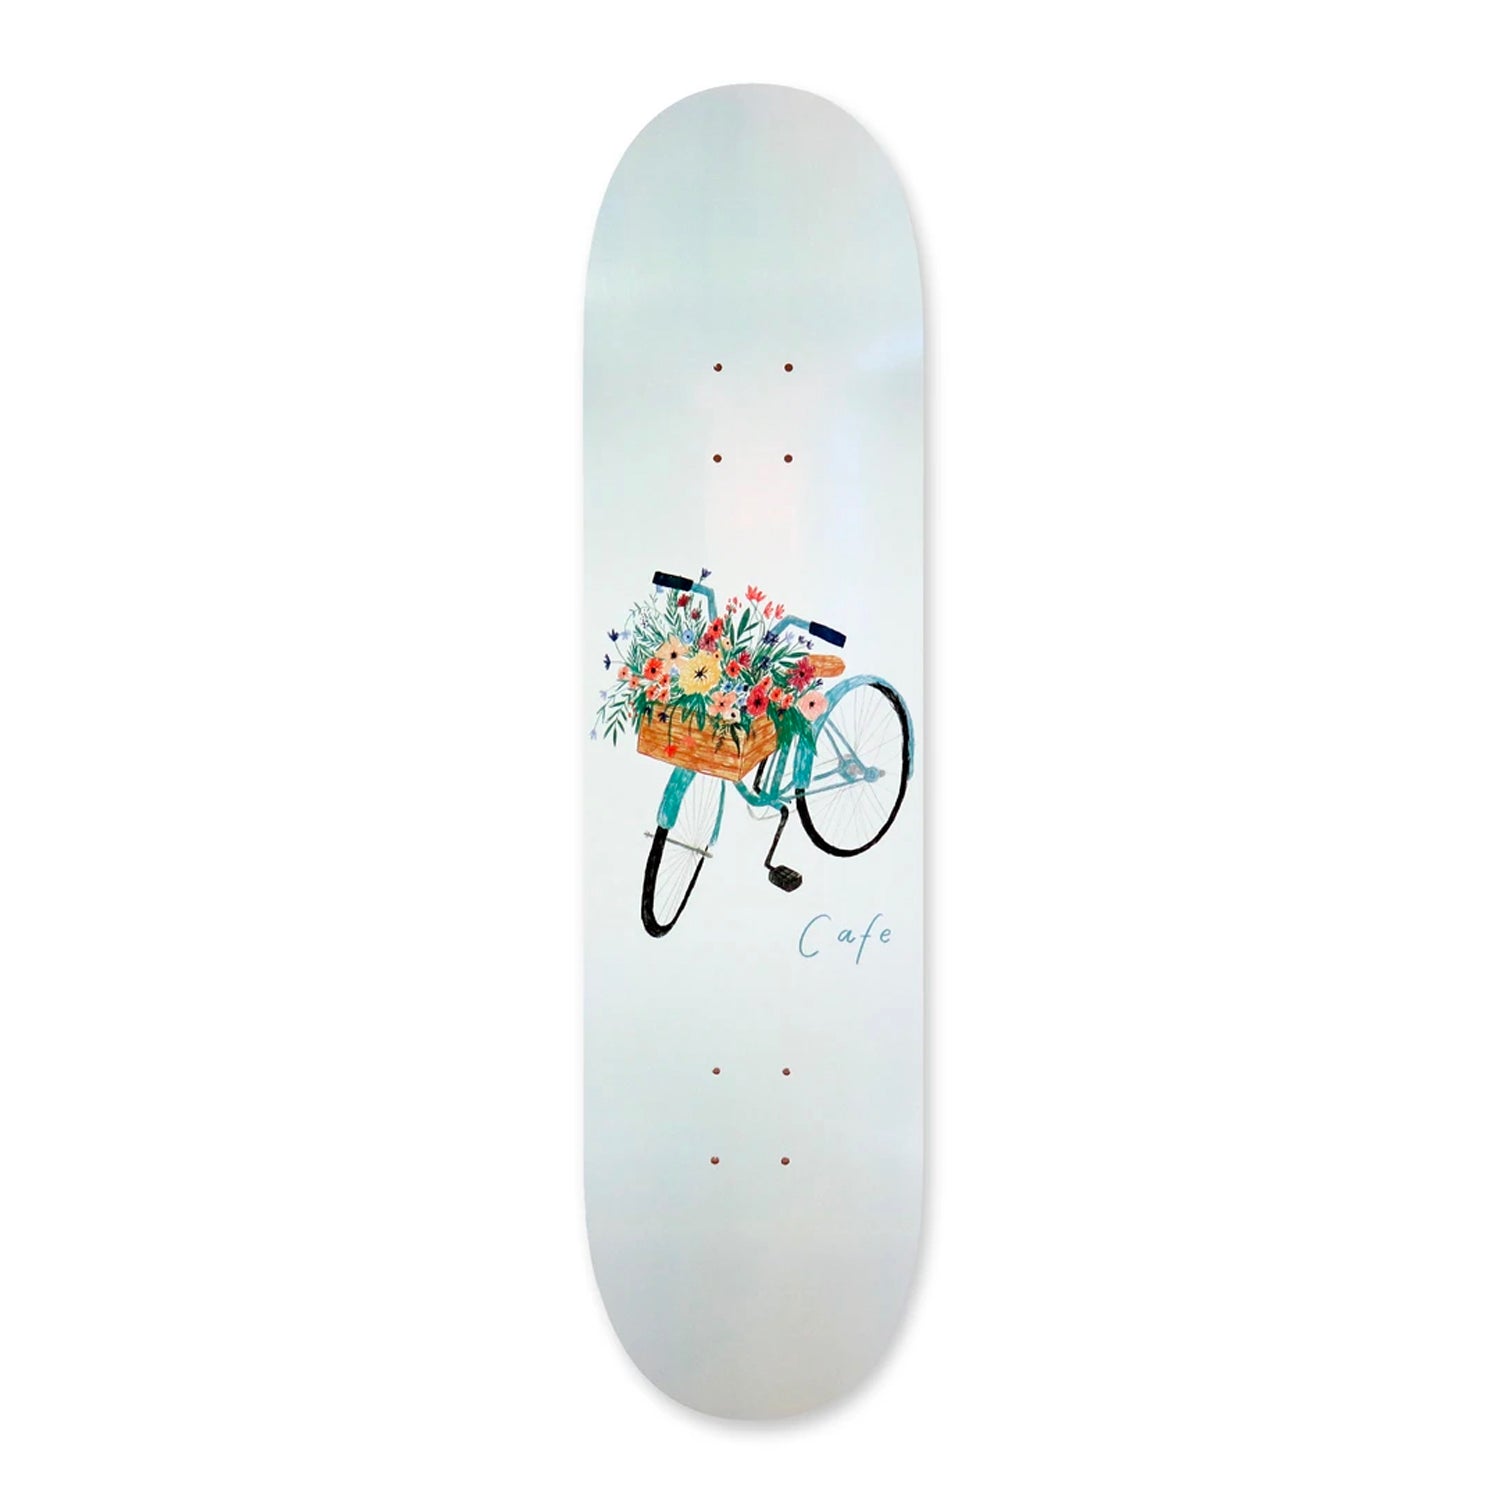 Skateboard Cafe - 8.5" - Flower Basket Deck - Prime Delux Store